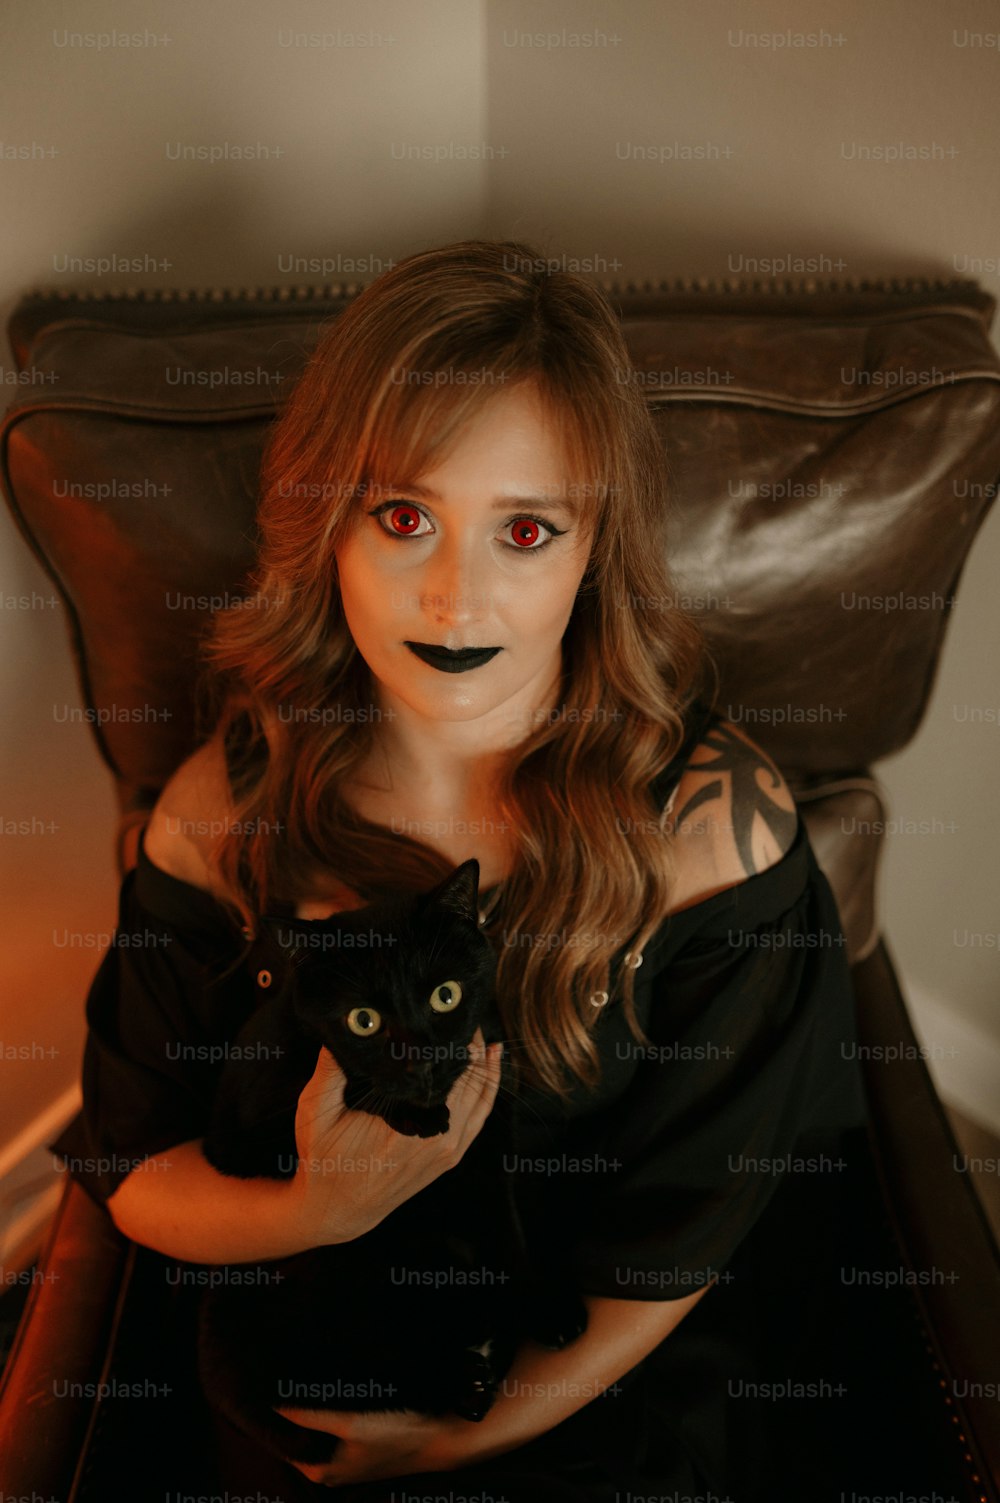 Eine Frau in einem schwarzen Kleid, die eine schwarze Katze hält